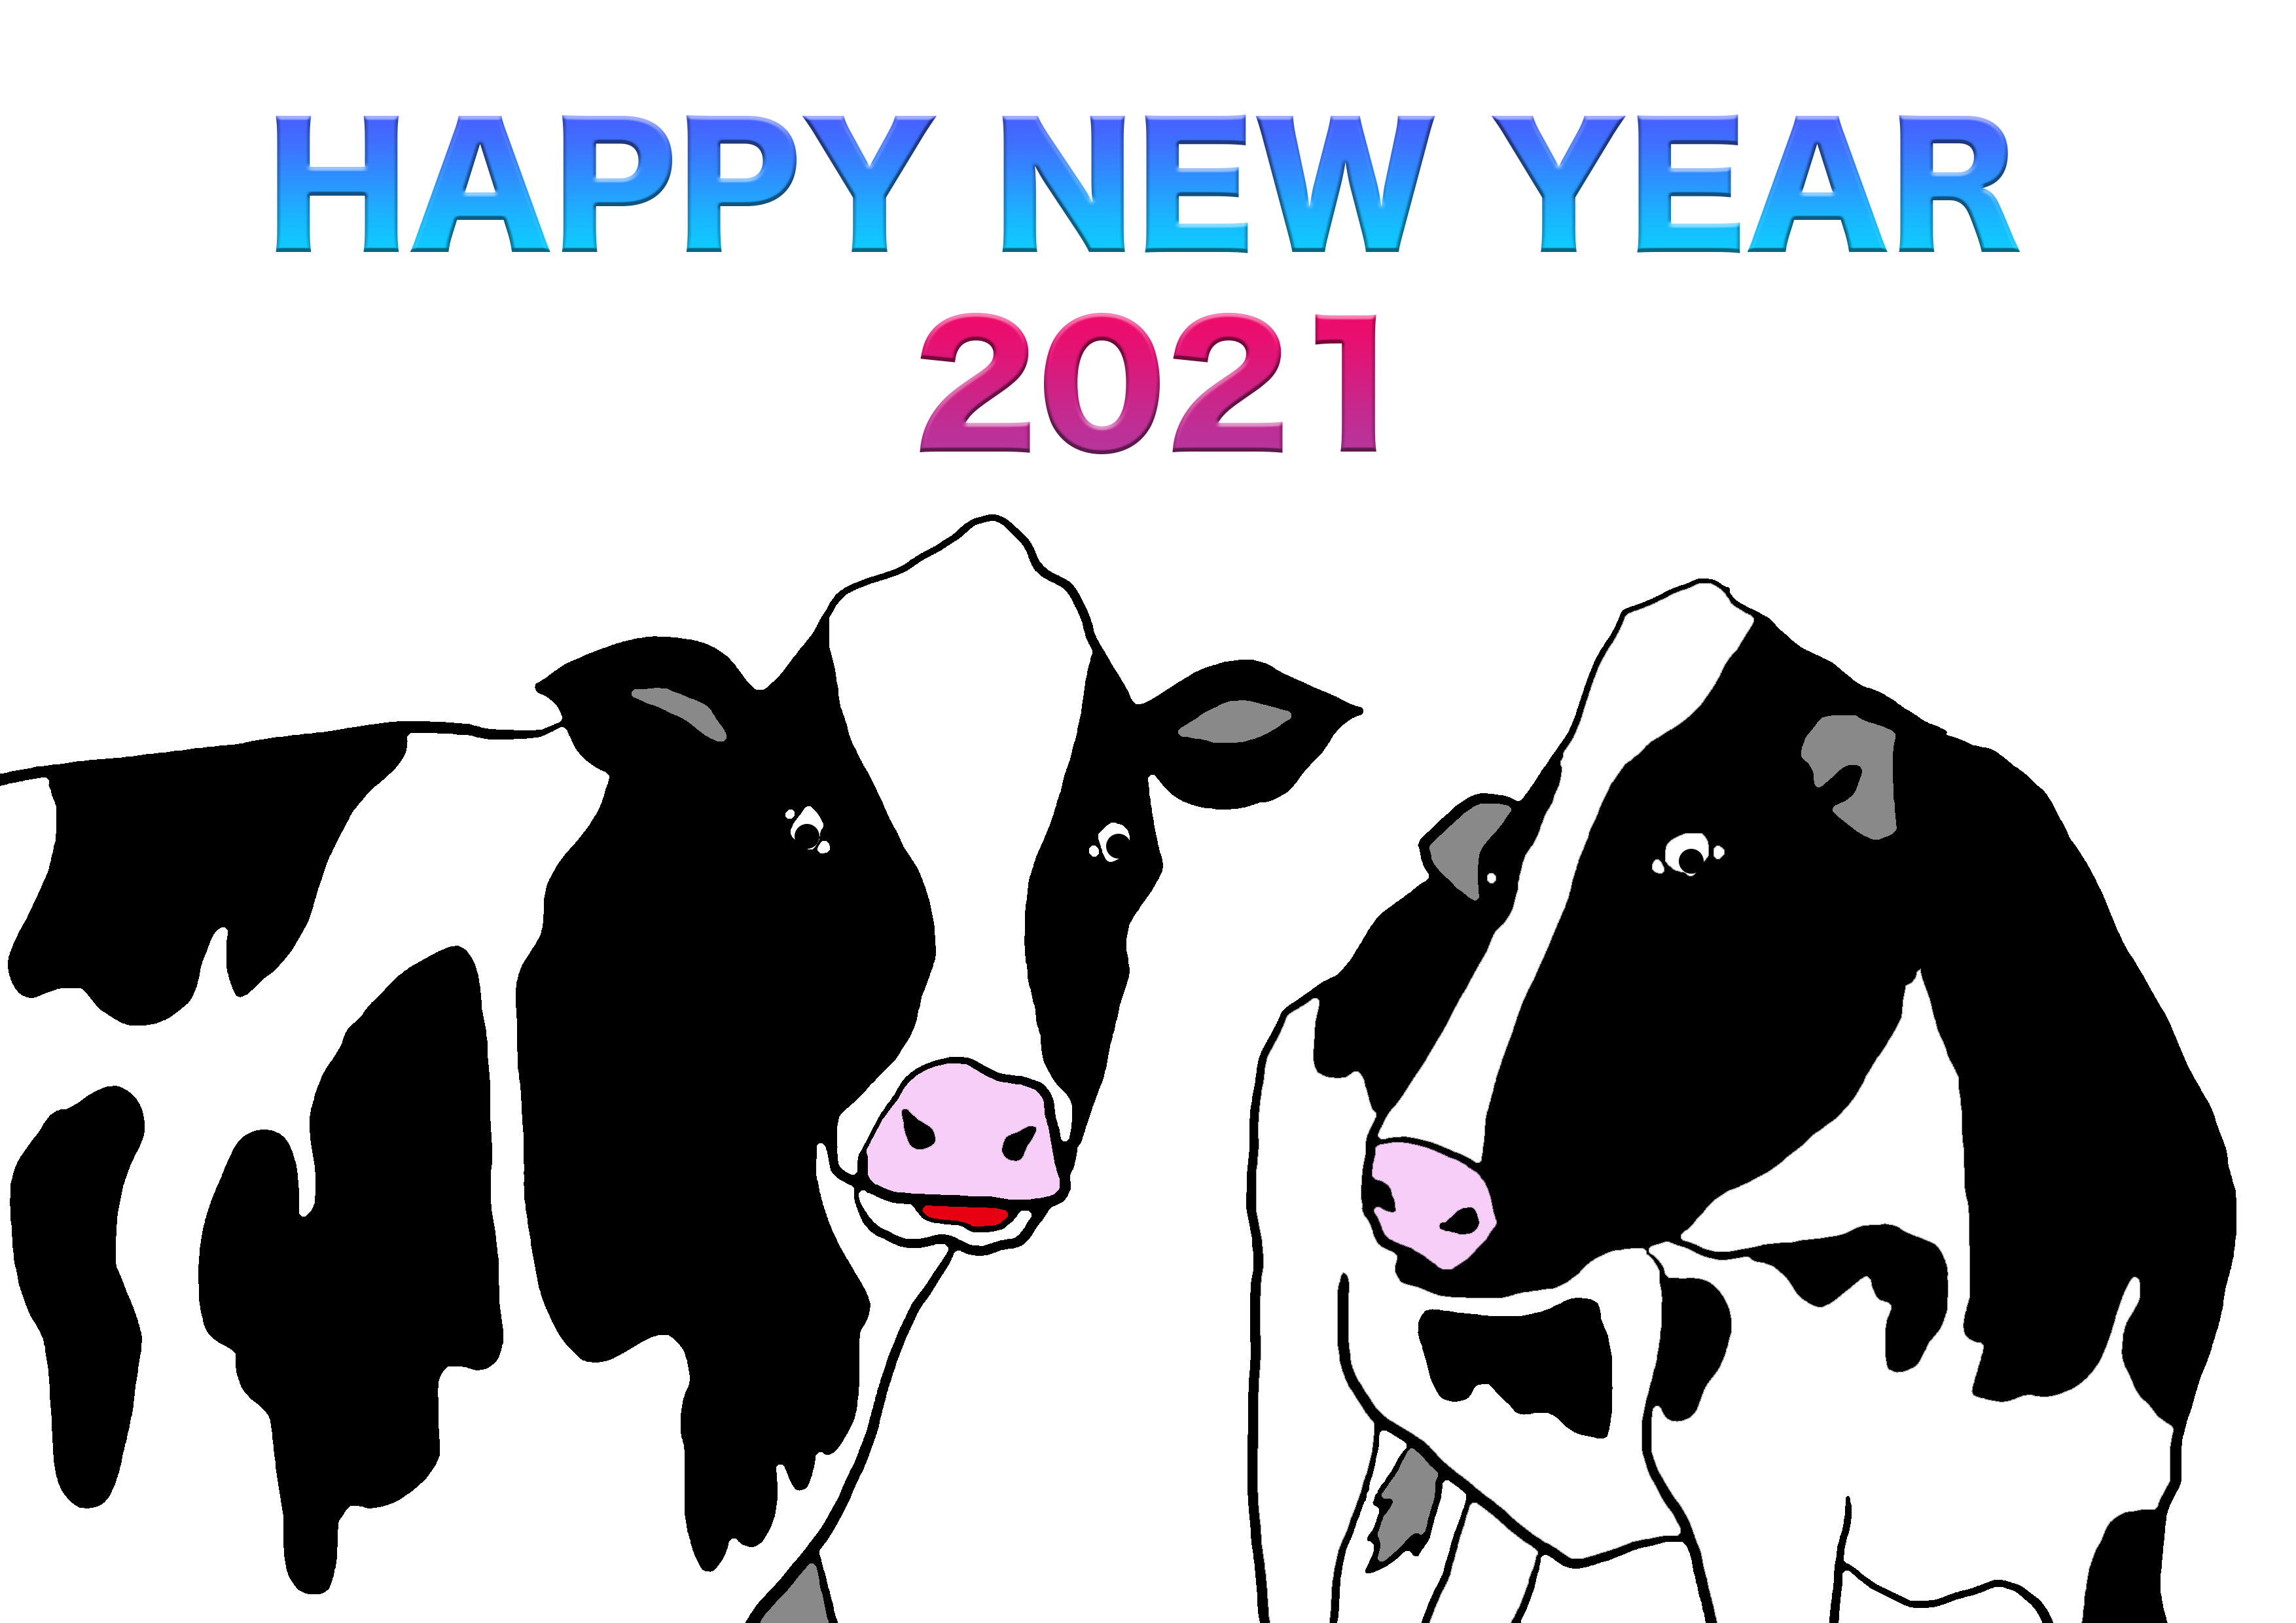 2021牛年のうしのイラスト年賀状素材cow